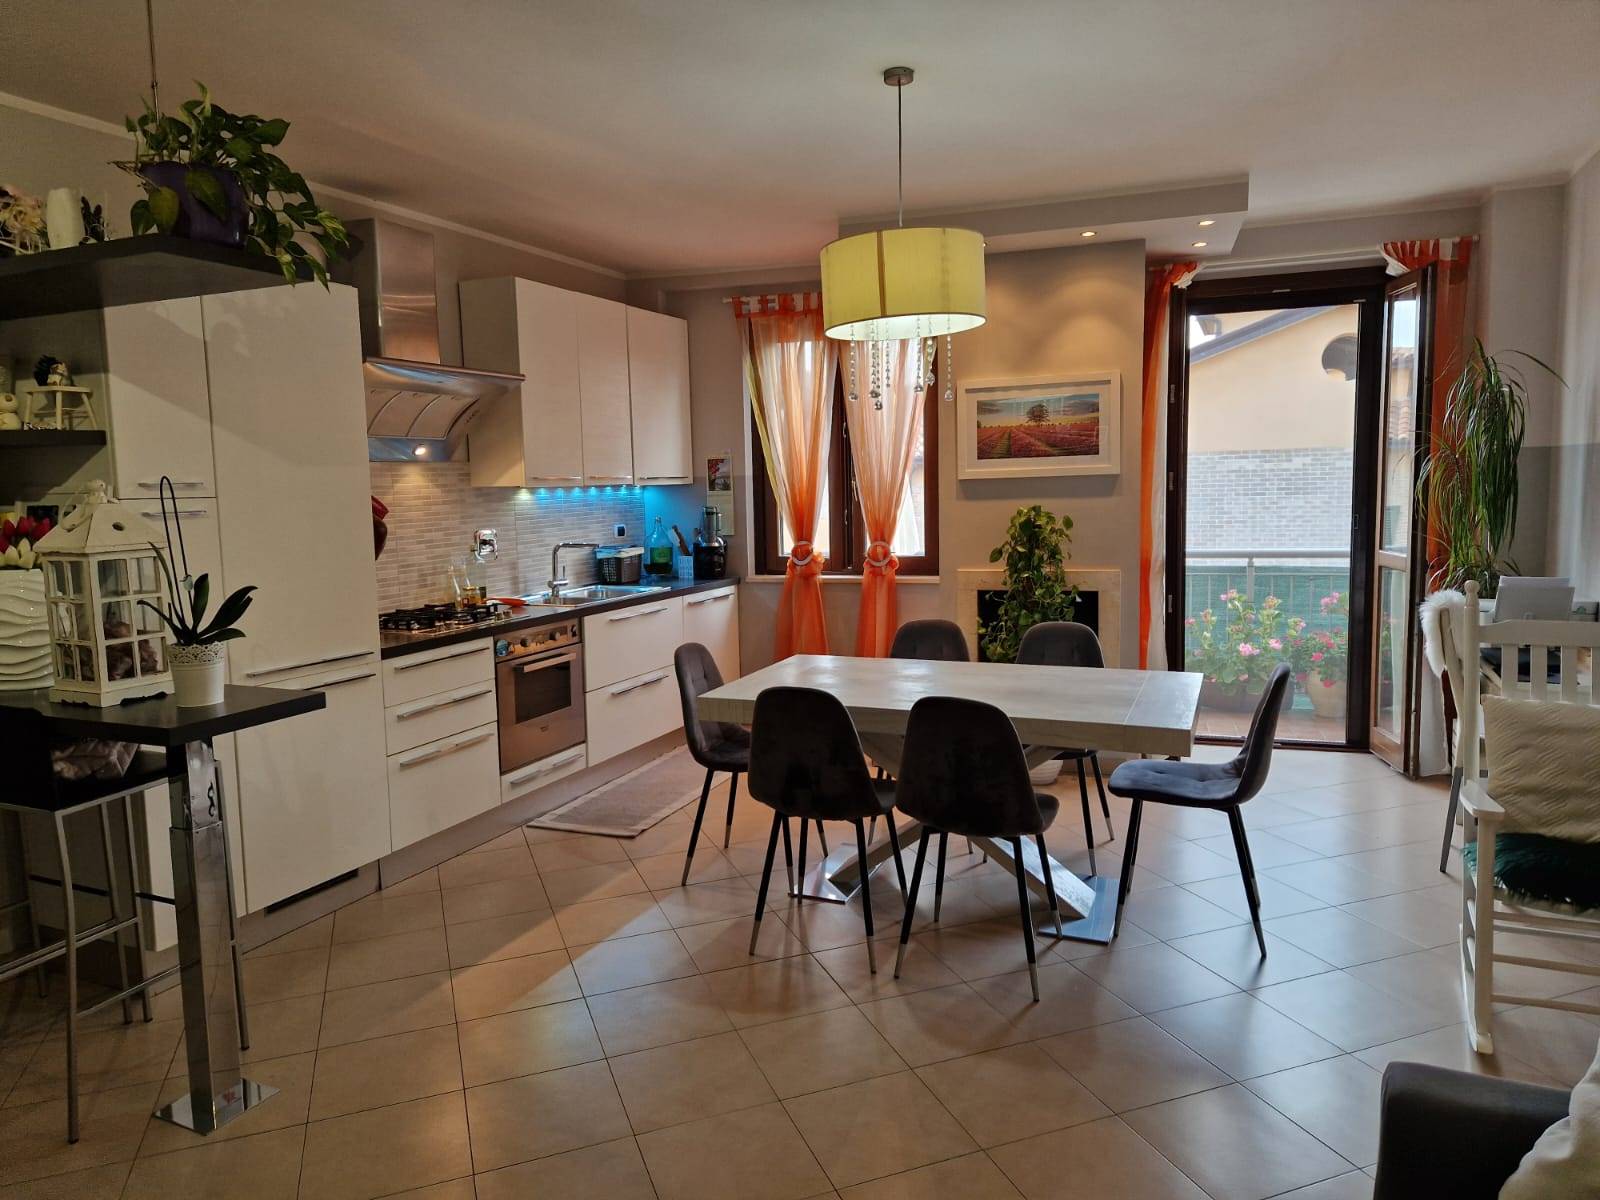 Appartamento in vendita a Castel Ritaldi, 3 locali, zona a, prezzo € 115.000 | PortaleAgenzieImmobiliari.it